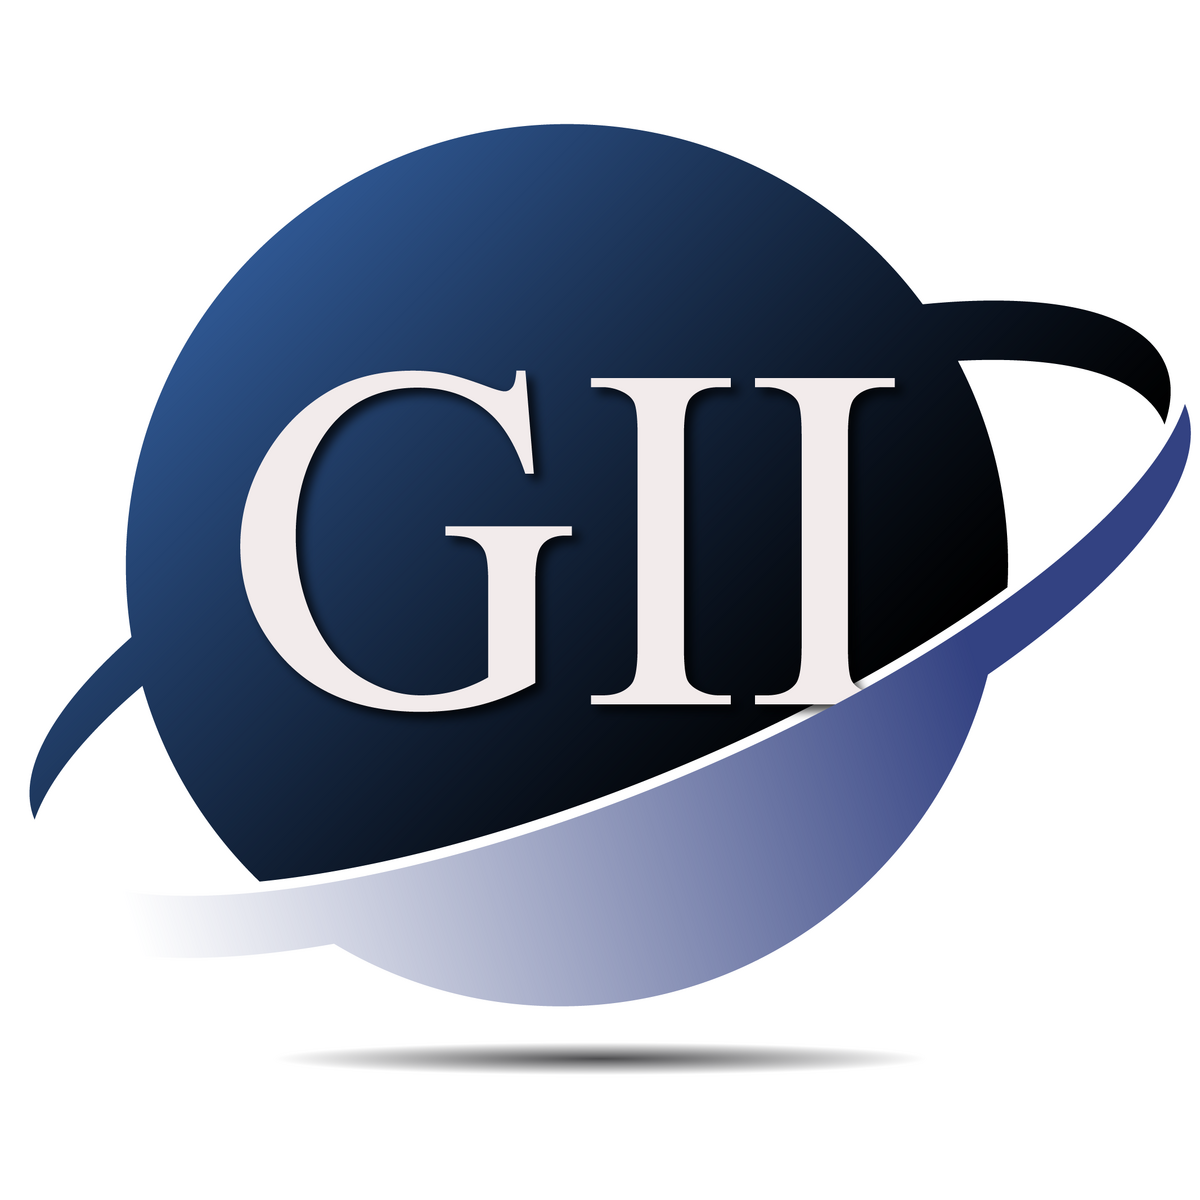 شاخص جهانی نوآوری (GII) چیست؟